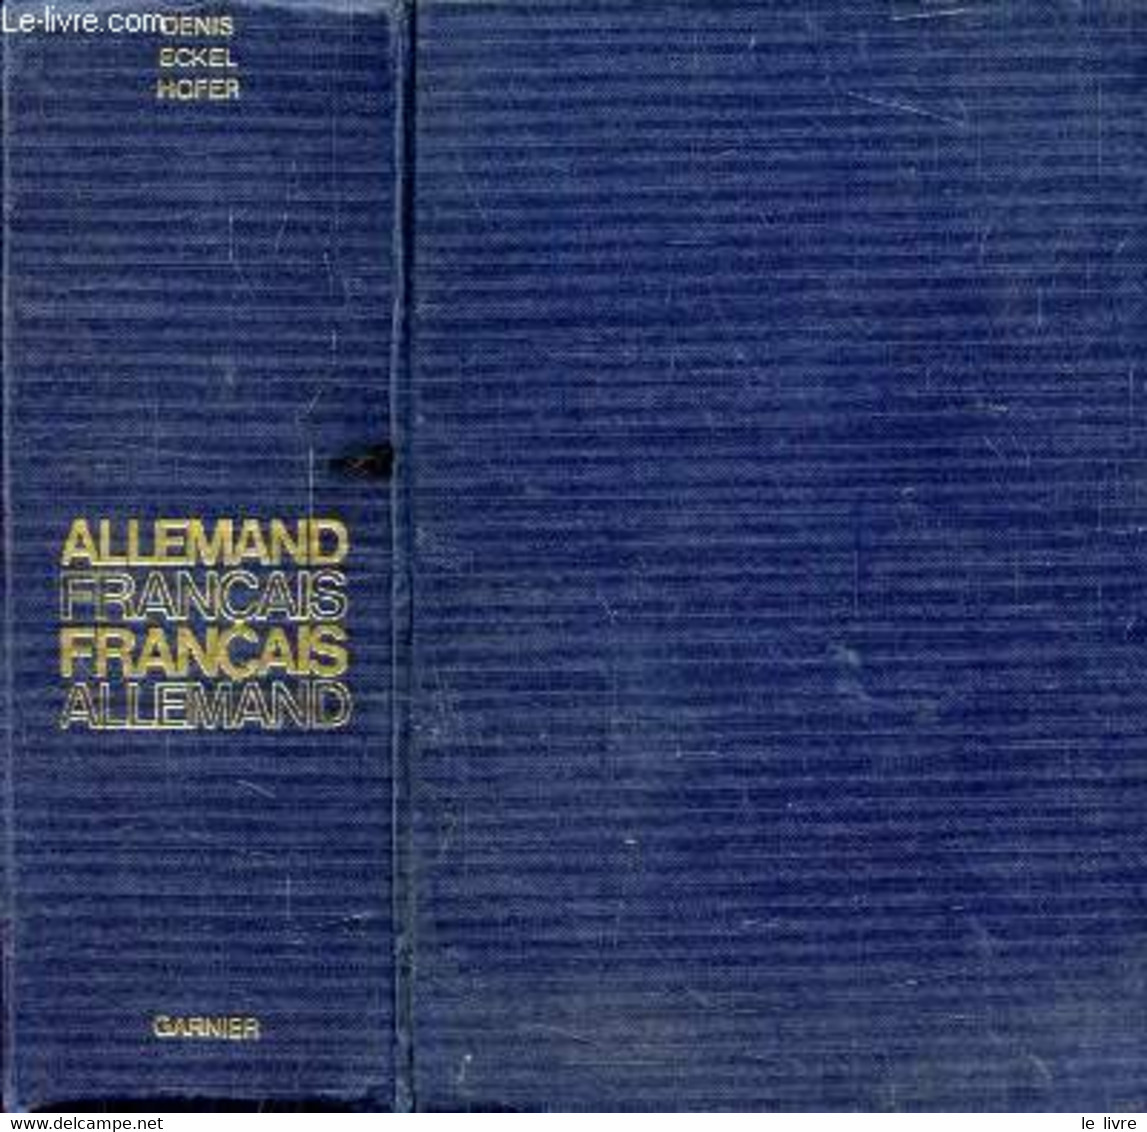 GRAND DICTIONNAIRE ALLEMAND-FRANCAIS ET FRANCAIS-ALLEMAND - DENIS JOSEPH, ECKEL M., HOFER H. - 1977 - Atlanten